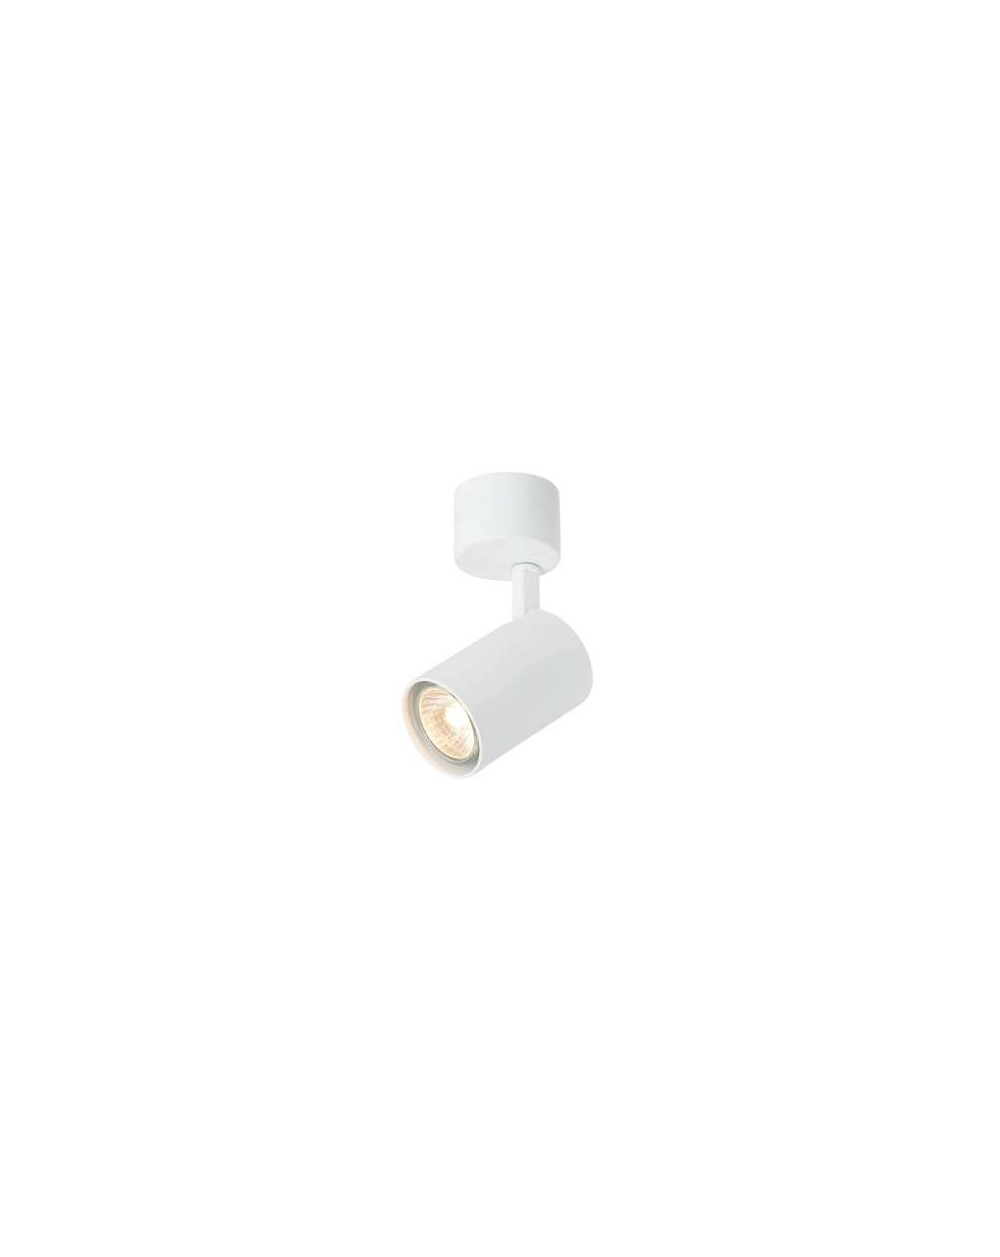 Lampa sufitowa Tuka Bianco / tuba reflektor / - Orlicki Design w kolorze białym lampa natynkowa regulowana